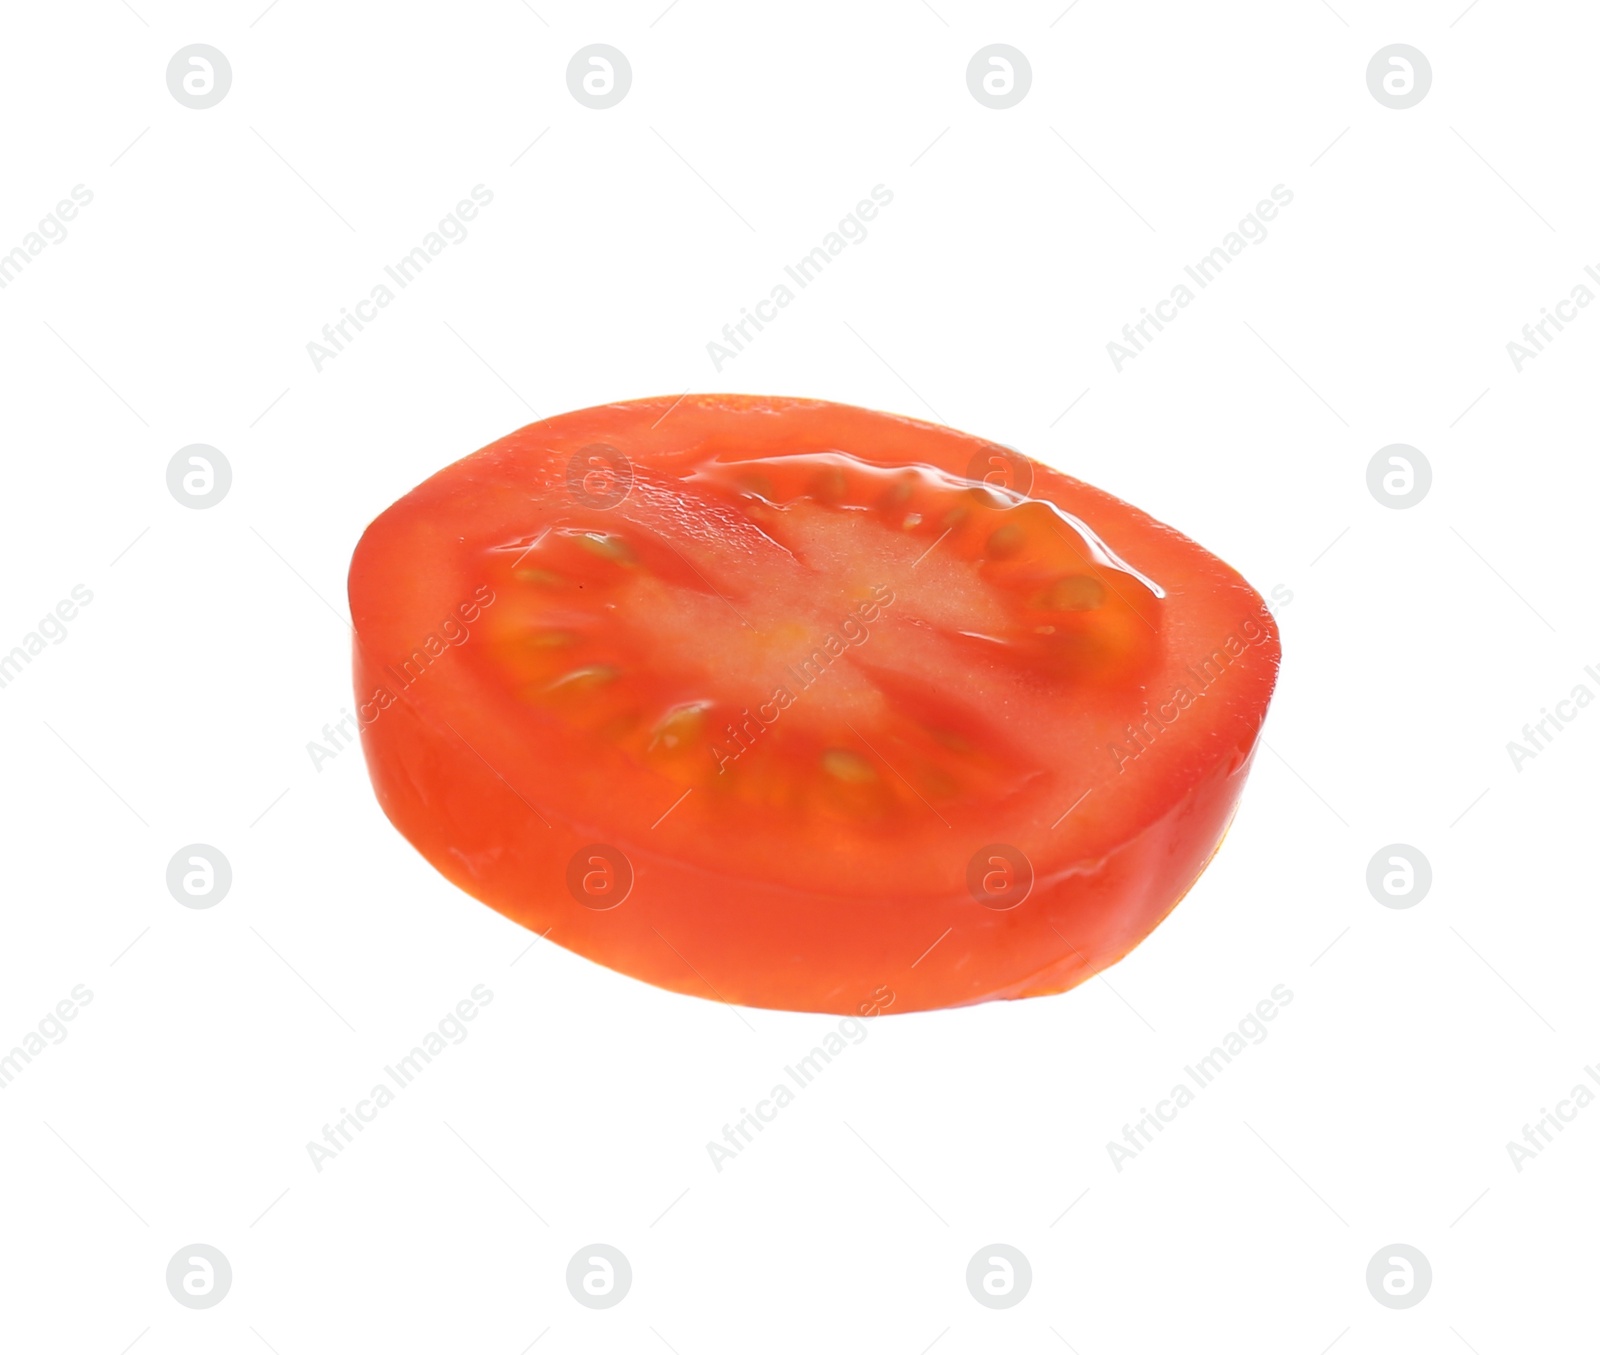 Photo of Slice of tasty raw tomato isolated on white